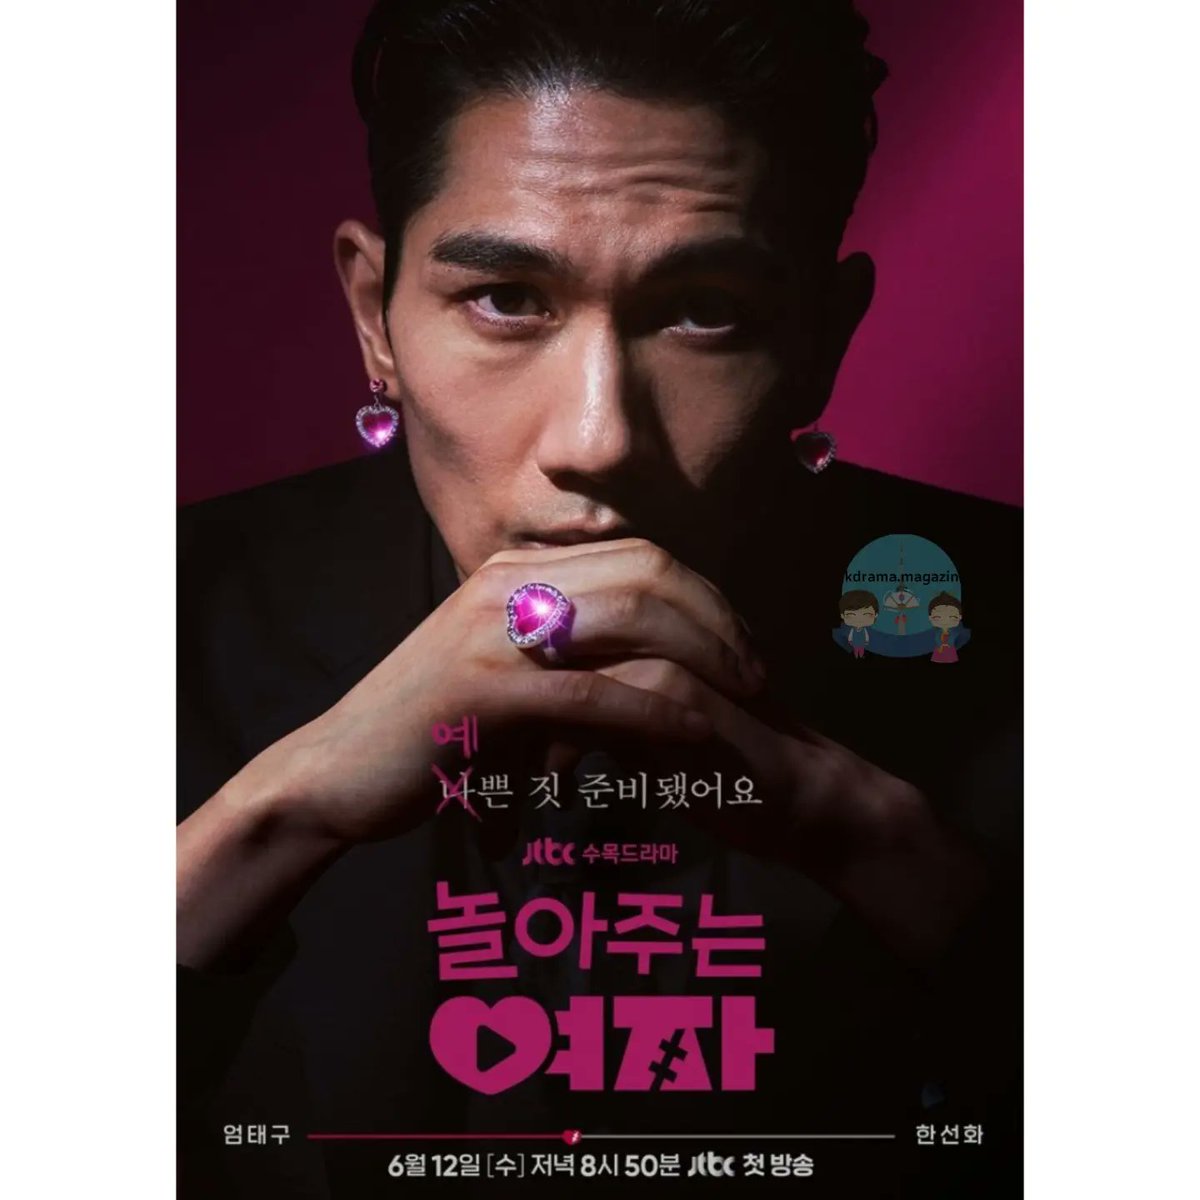 JTBC Draması #TheWomanWhoPlays İçin Posterler Yayınlandı.

🗓12 Haziran'da yayınlanacak.

#UhmTaeGoo #HanSunHwa #KwonYul #KwonYool #ThePlayingWoman